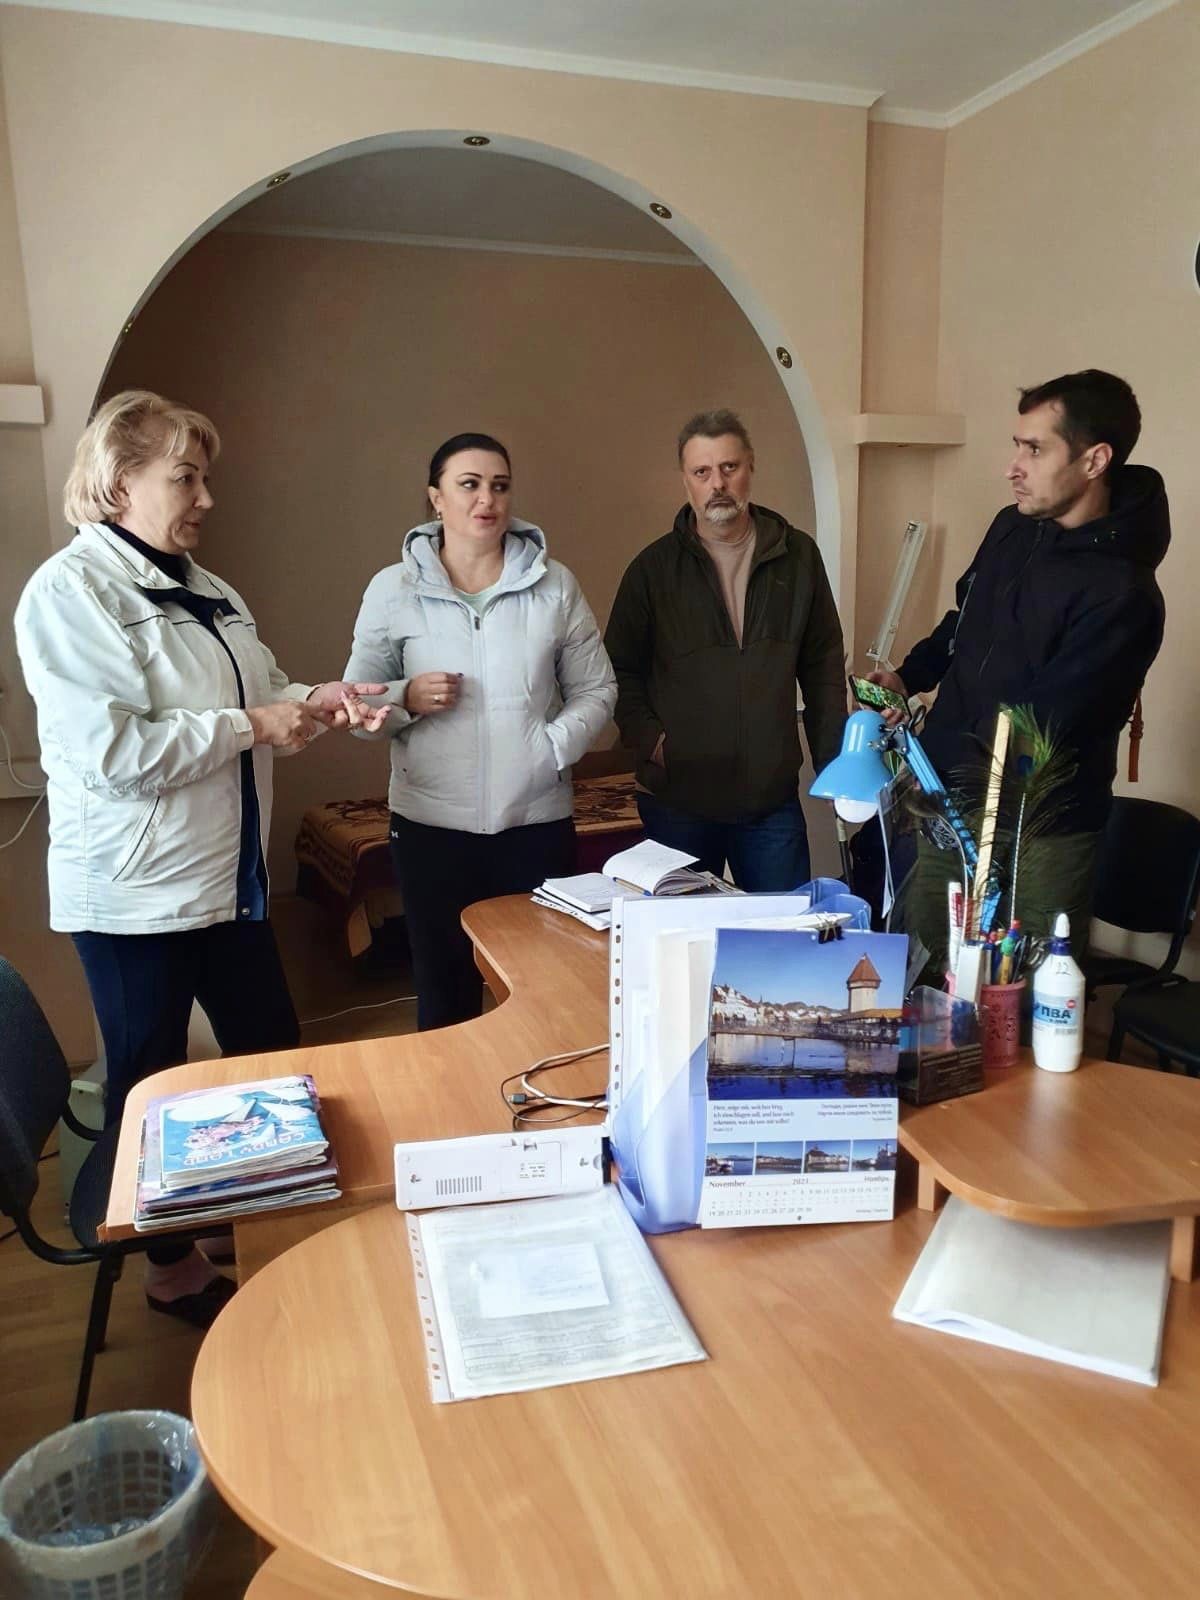 Директор Центра экстренной медицинской помощи и медицины катастроф посетила Белгород-Днестровский район